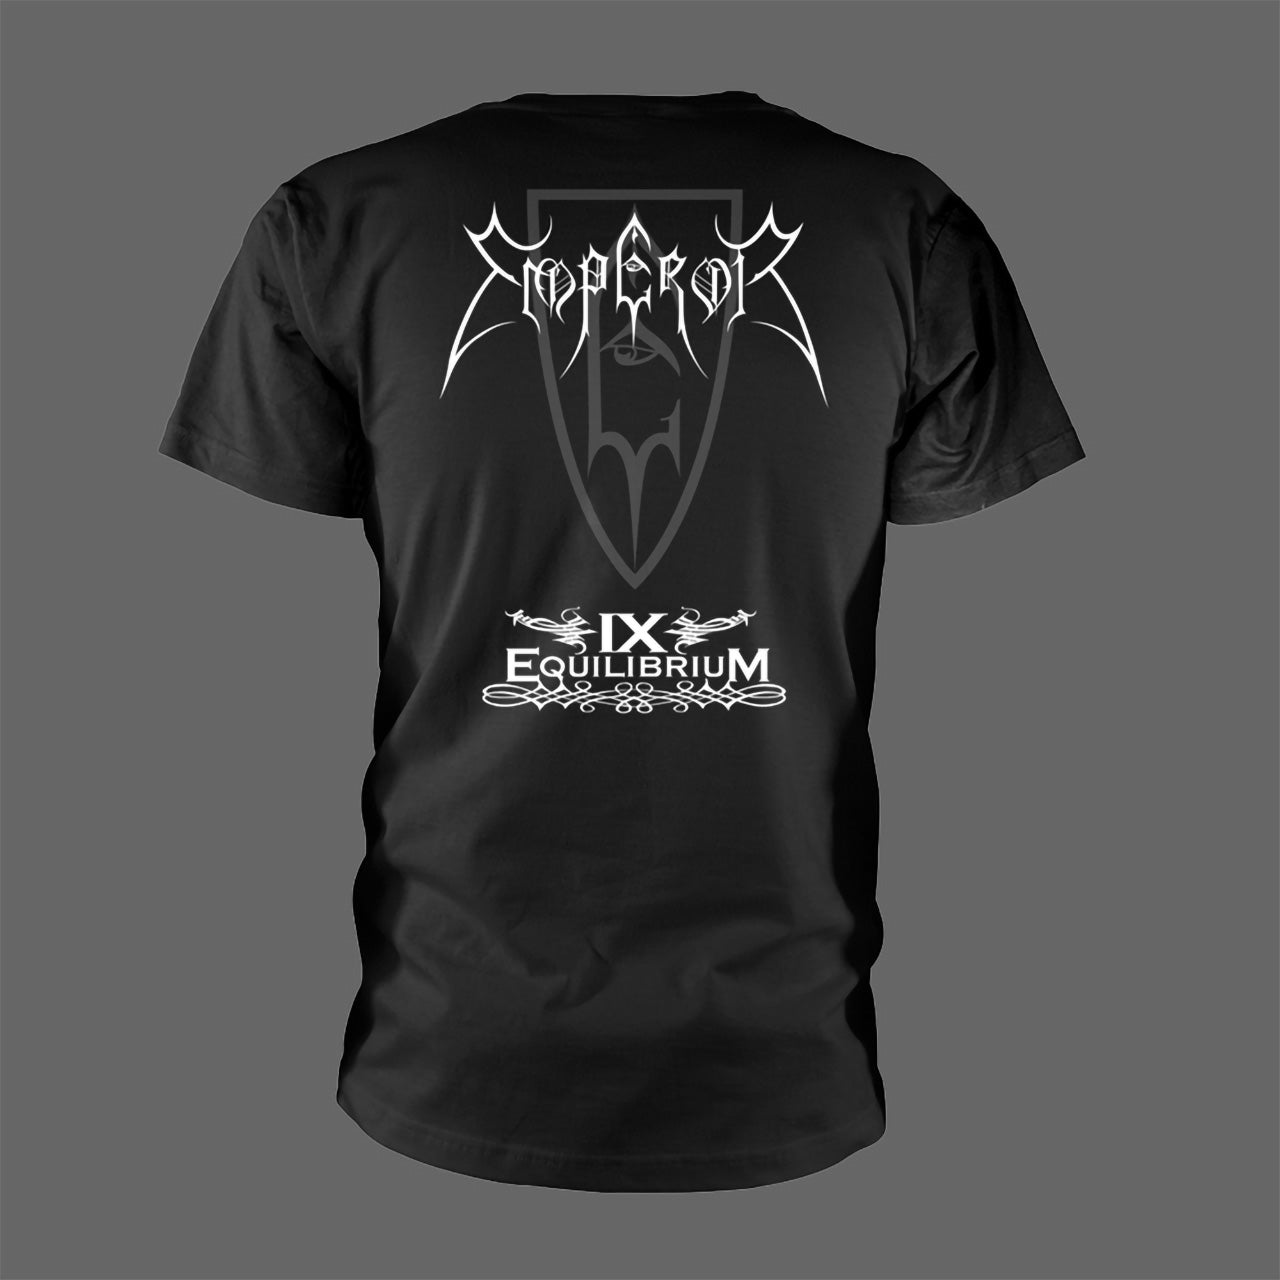 Emperor - The Warriors of Modern Death (T-Shirt)